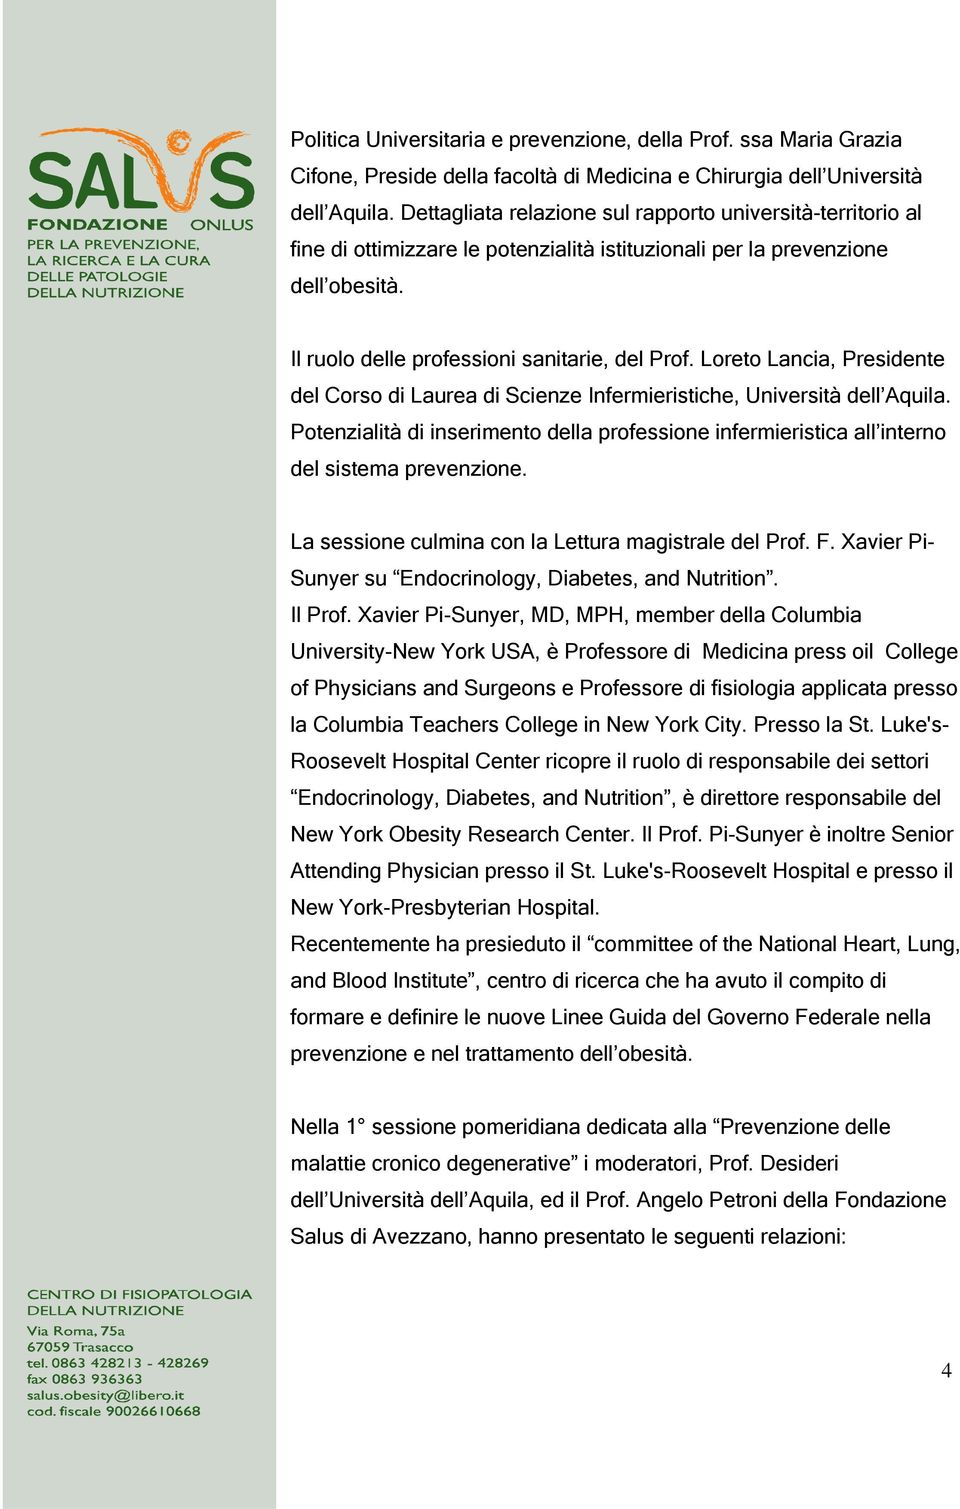 Loreto Lancia, Presidente del Corso di Laurea di Scienze Infermieristiche, Università dell Aquila. Potenzialità di inserimento della professione infermieristica all interno del sistema prevenzione.